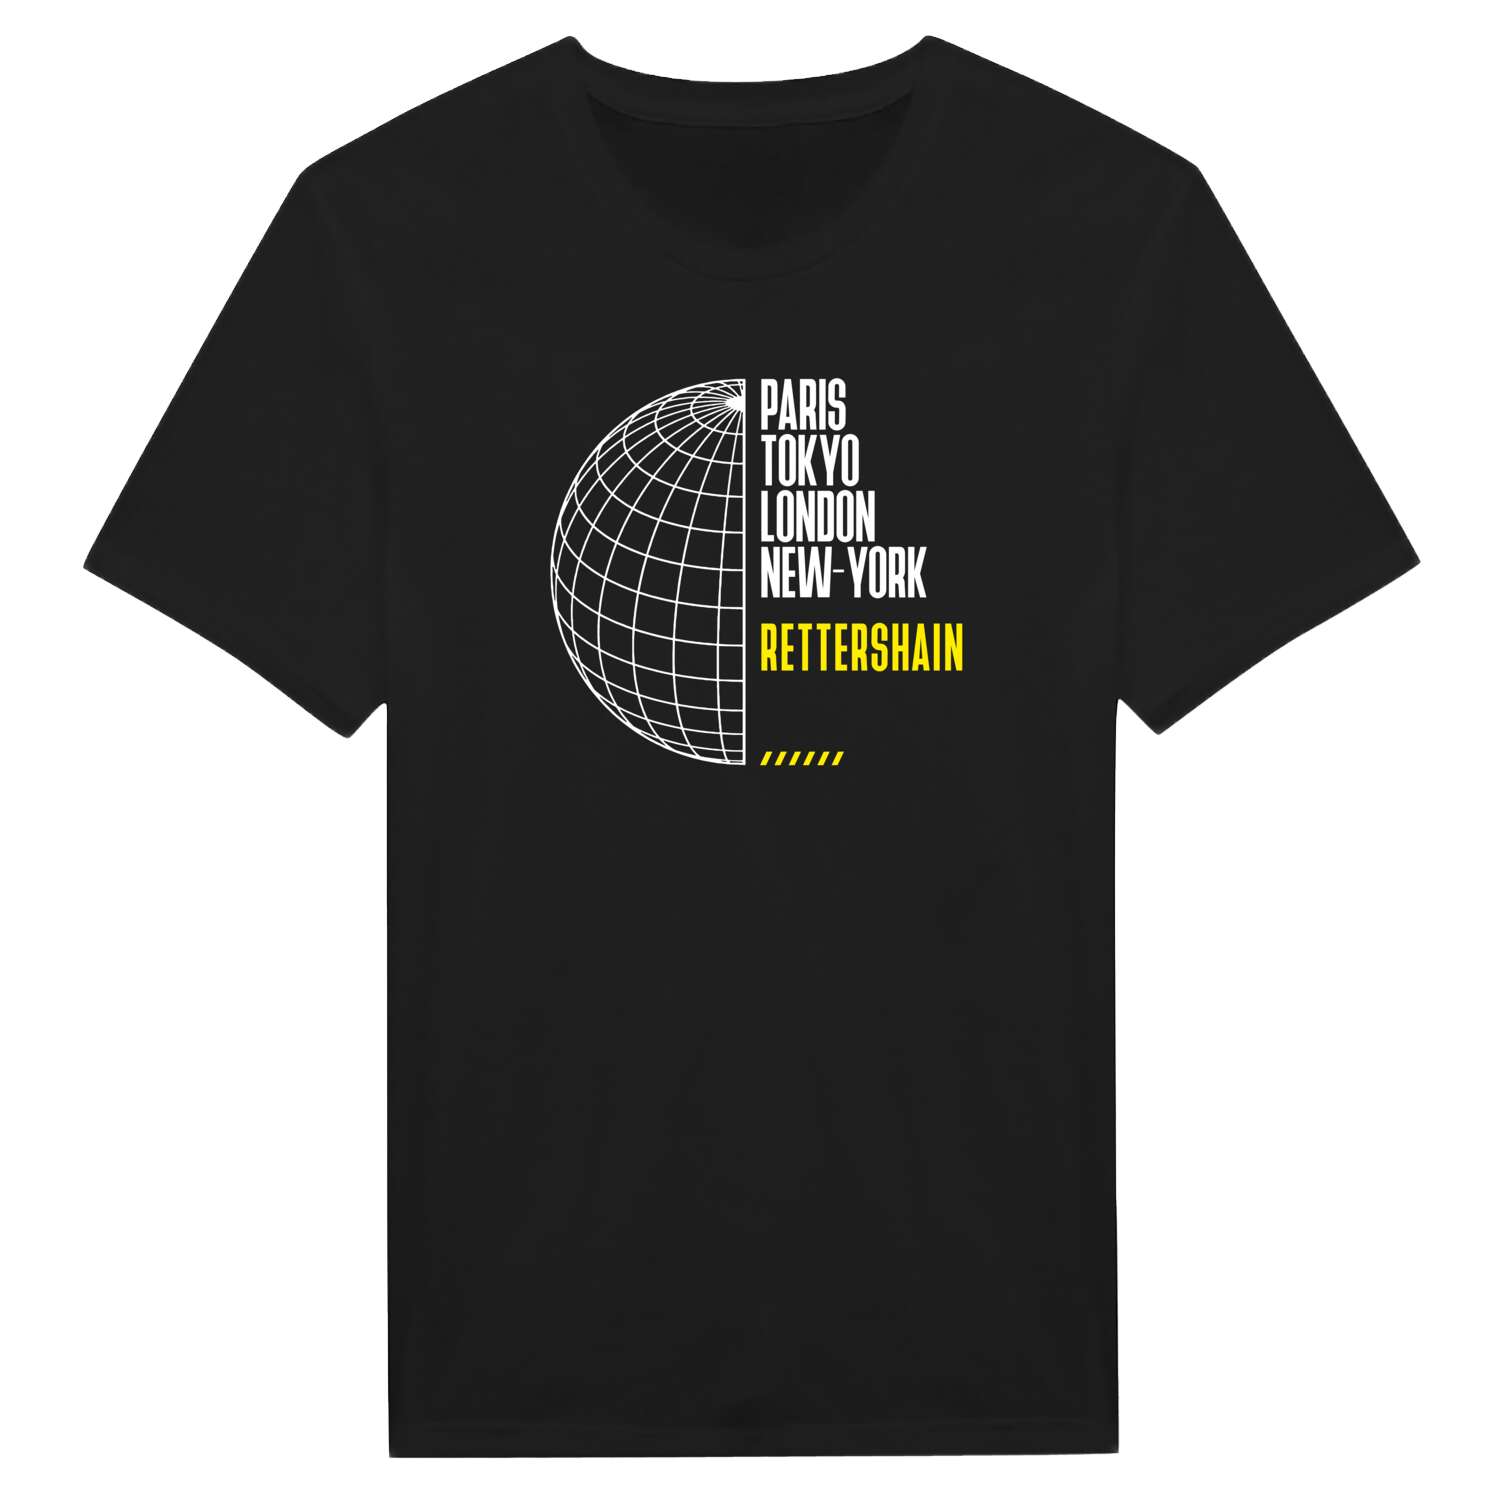 Rettershain T-Shirt »Paris Tokyo London«